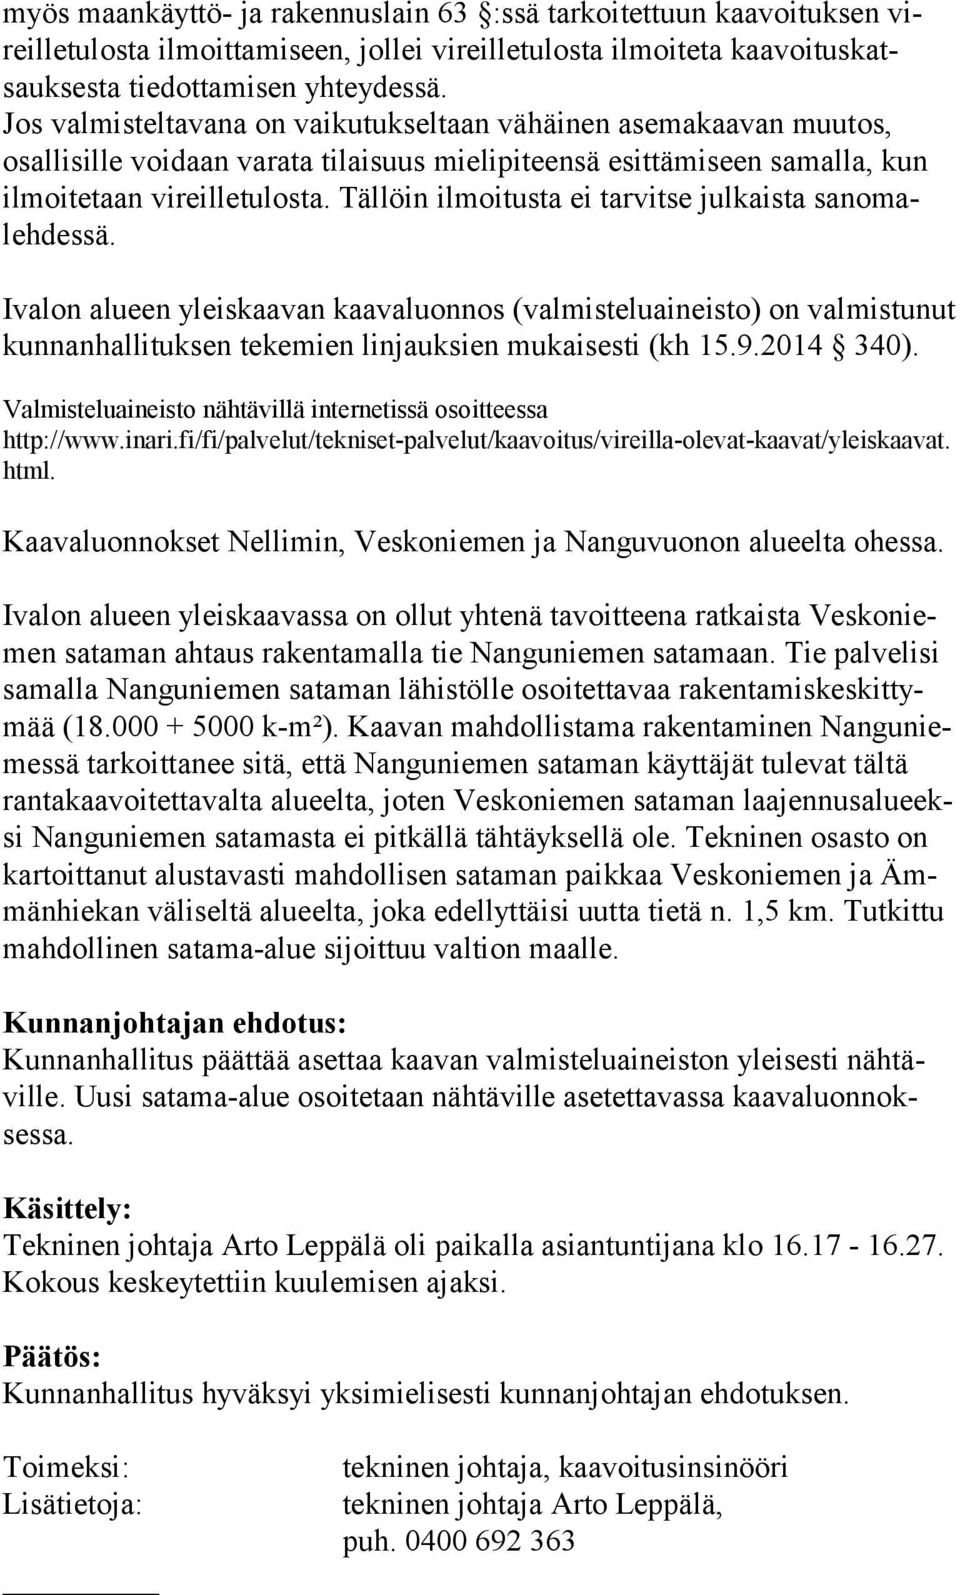 Tällöin ilmoitusta ei tarvitse julkais ta sanomalehdessä. Ivalon alueen yleiskaavan kaavaluonnos (valmisteluaineisto) on valmistunut kunnanhallituksen tekemien linjauksien mukaisesti (kh 15.9.